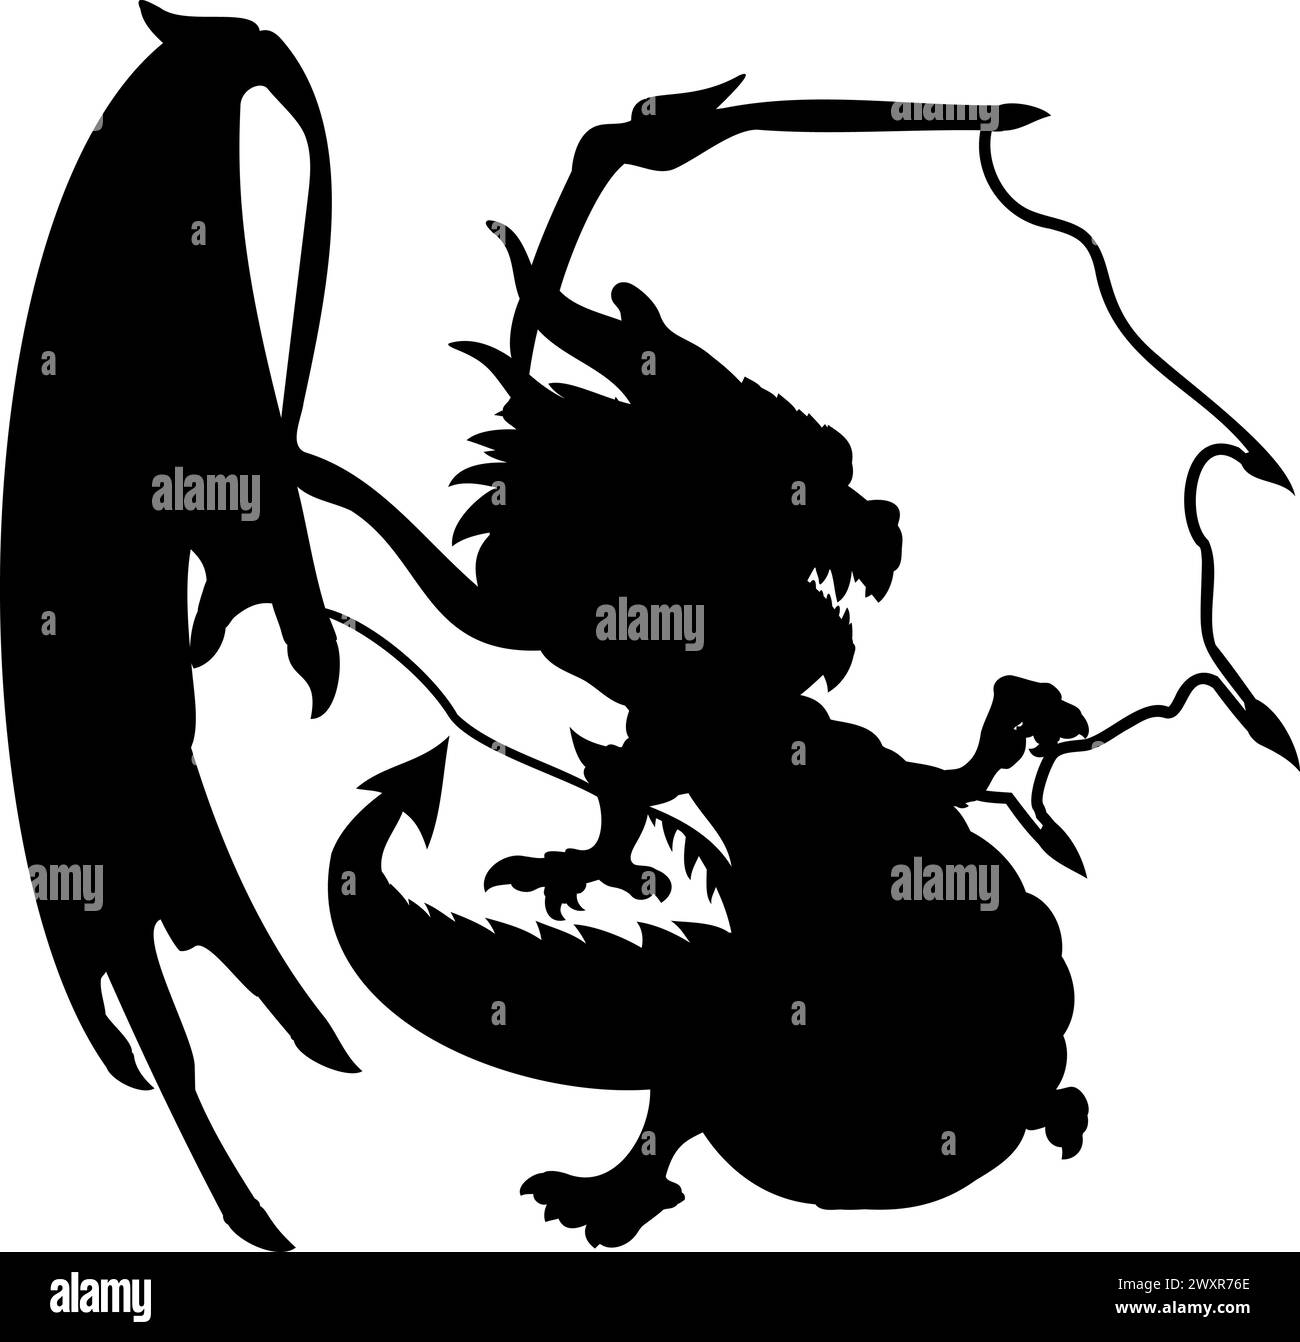 Forma di drago con ali. Illustrazione vettoriale del drago alato verde che punta con il dito della zampa destra. Drago con ali, corna, denti, baffi, Illustrazione Vettoriale